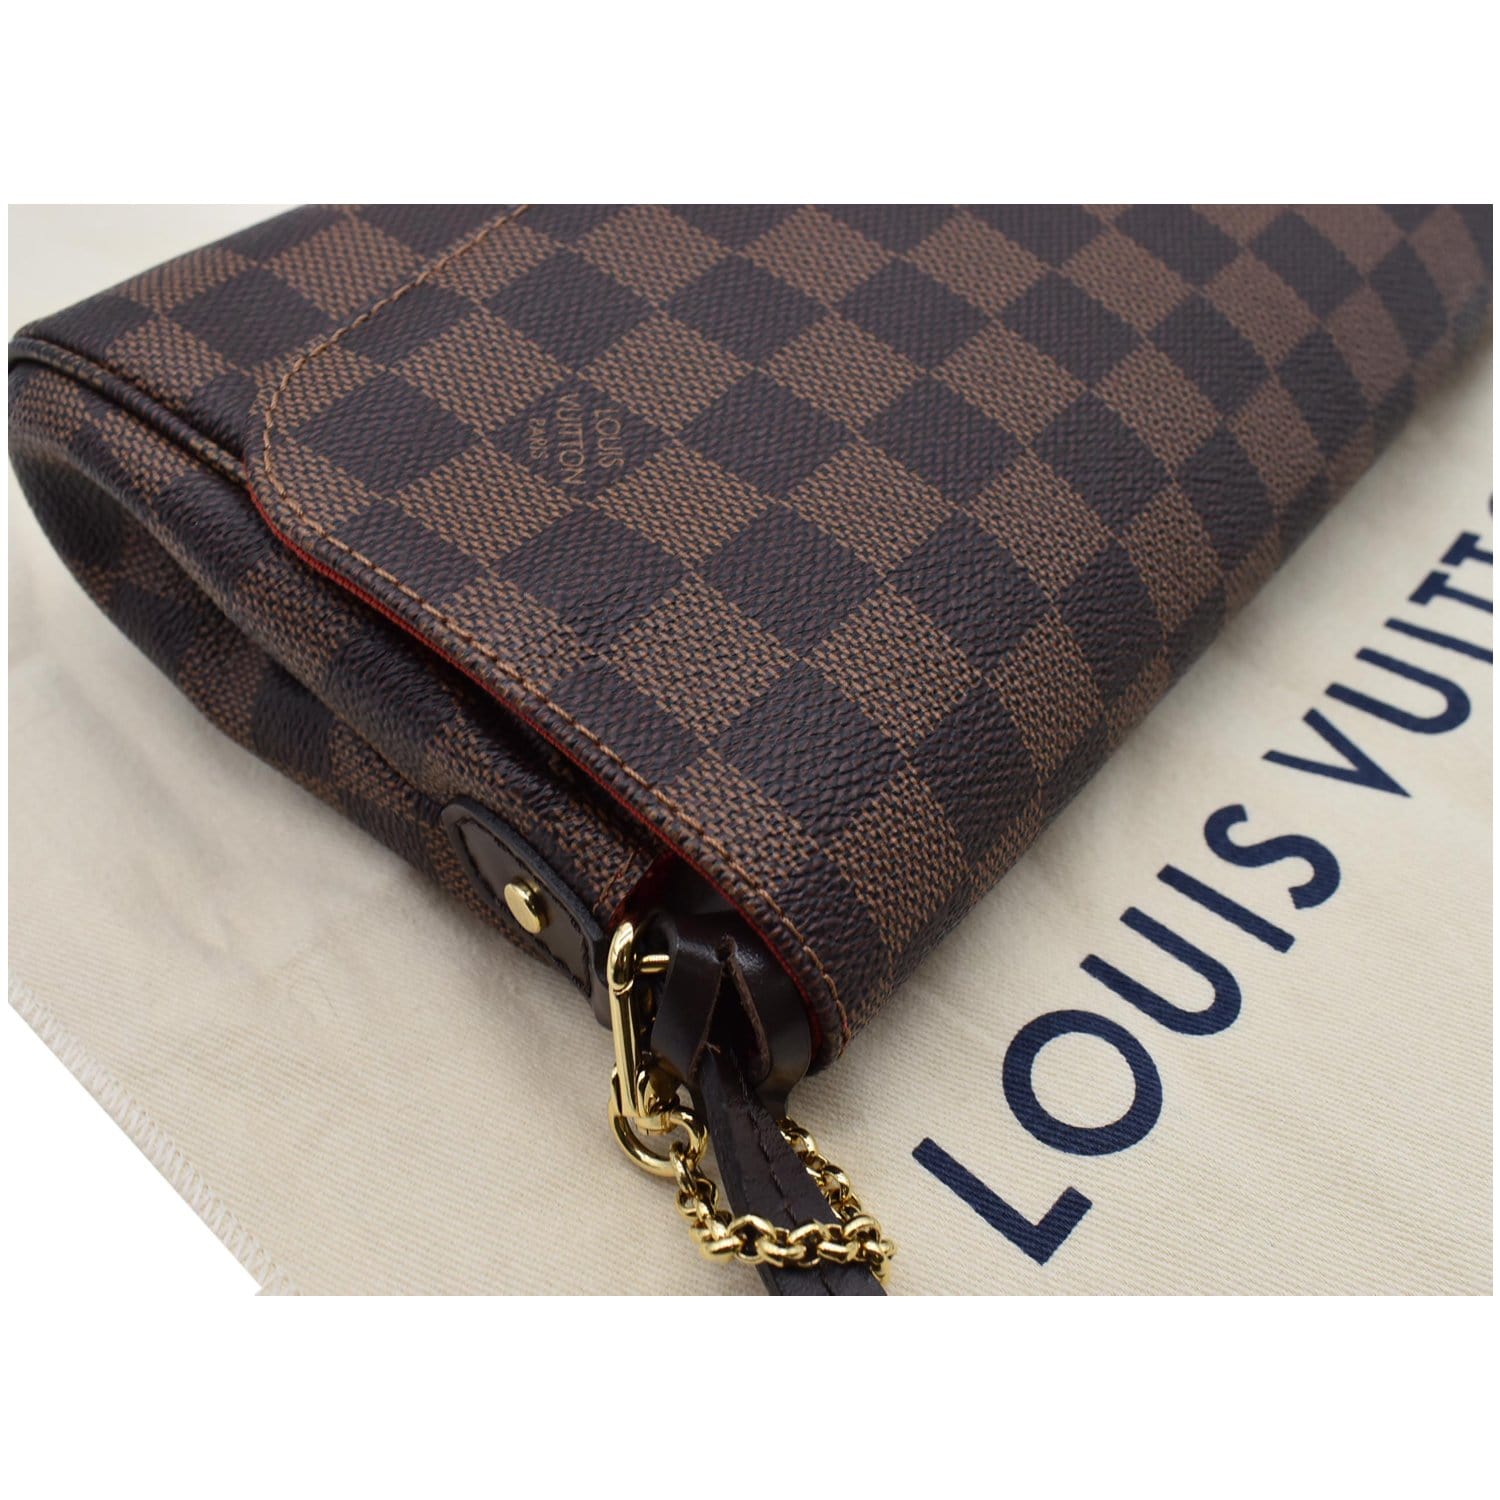 Louis Vuitton Damier Azur Canvas Favorite MM Bag - Yoogi's Closet